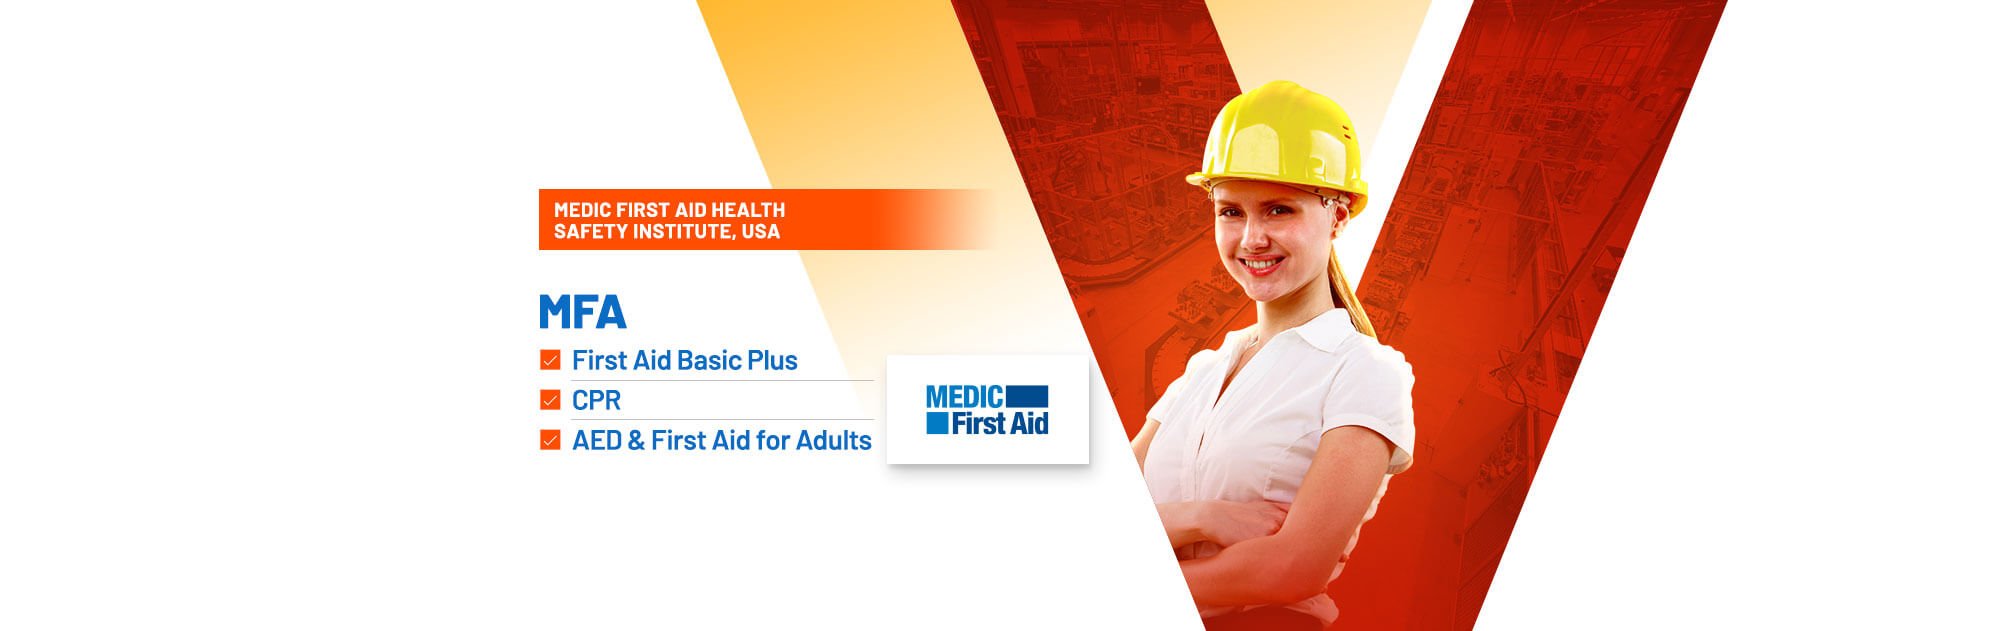 HSEI NEBOSH Training Institute Kerala India - Medic First Aid